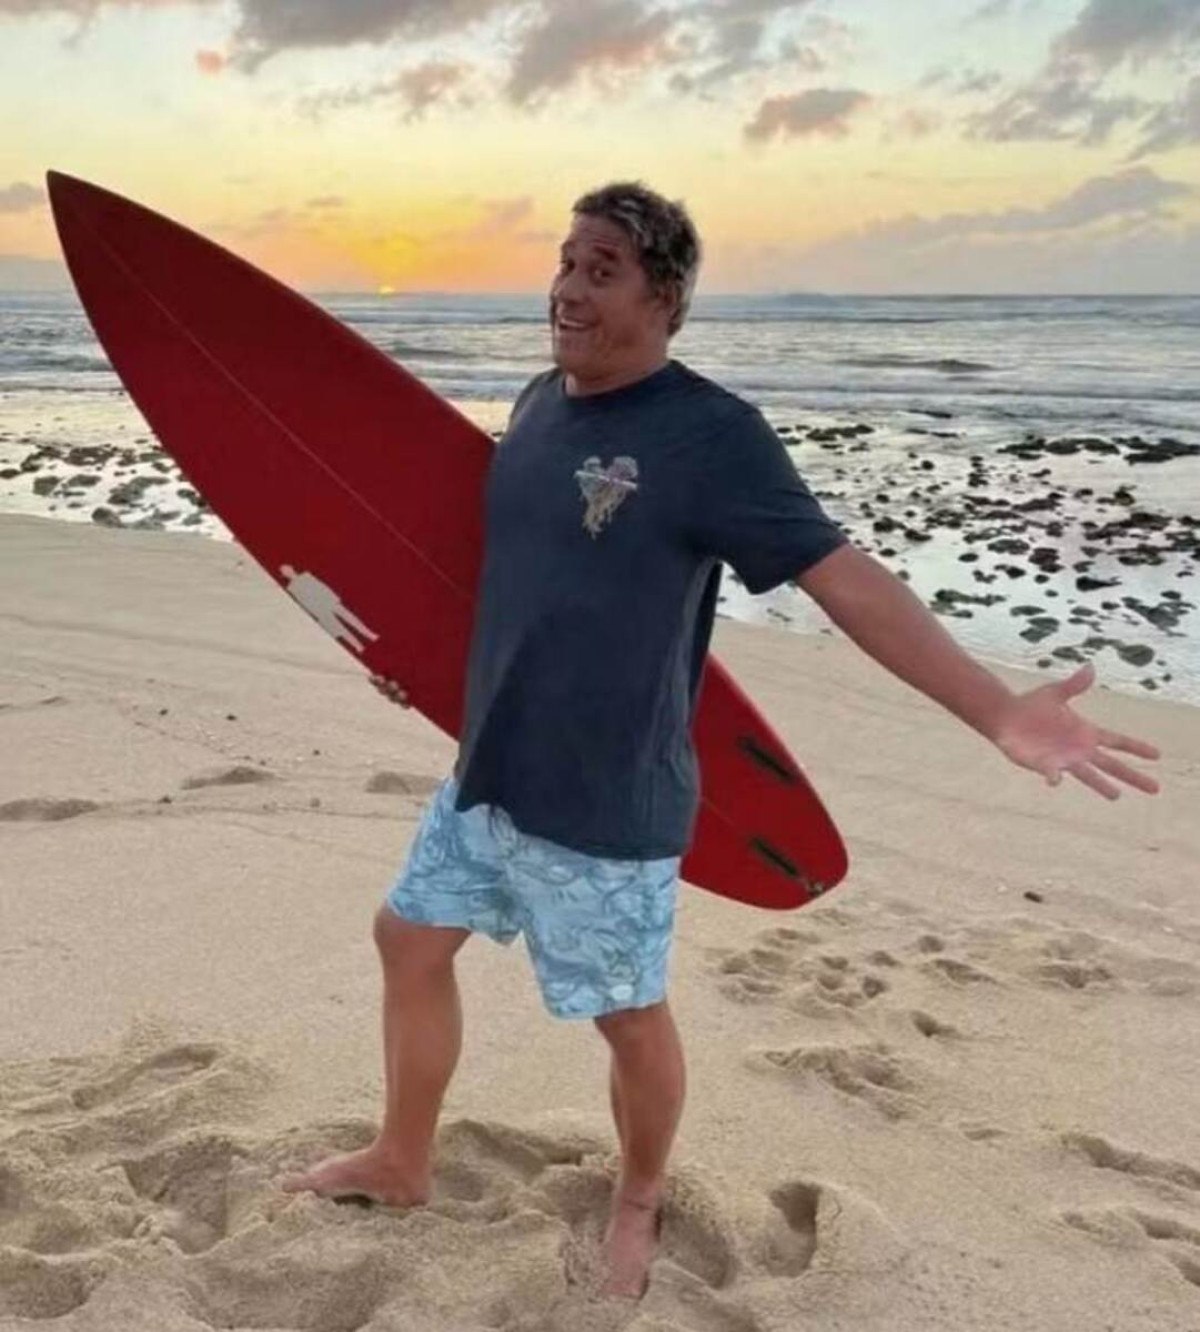 Tamayo Perry sorrindo com a prancha de surfe, esporte que adorava praticar